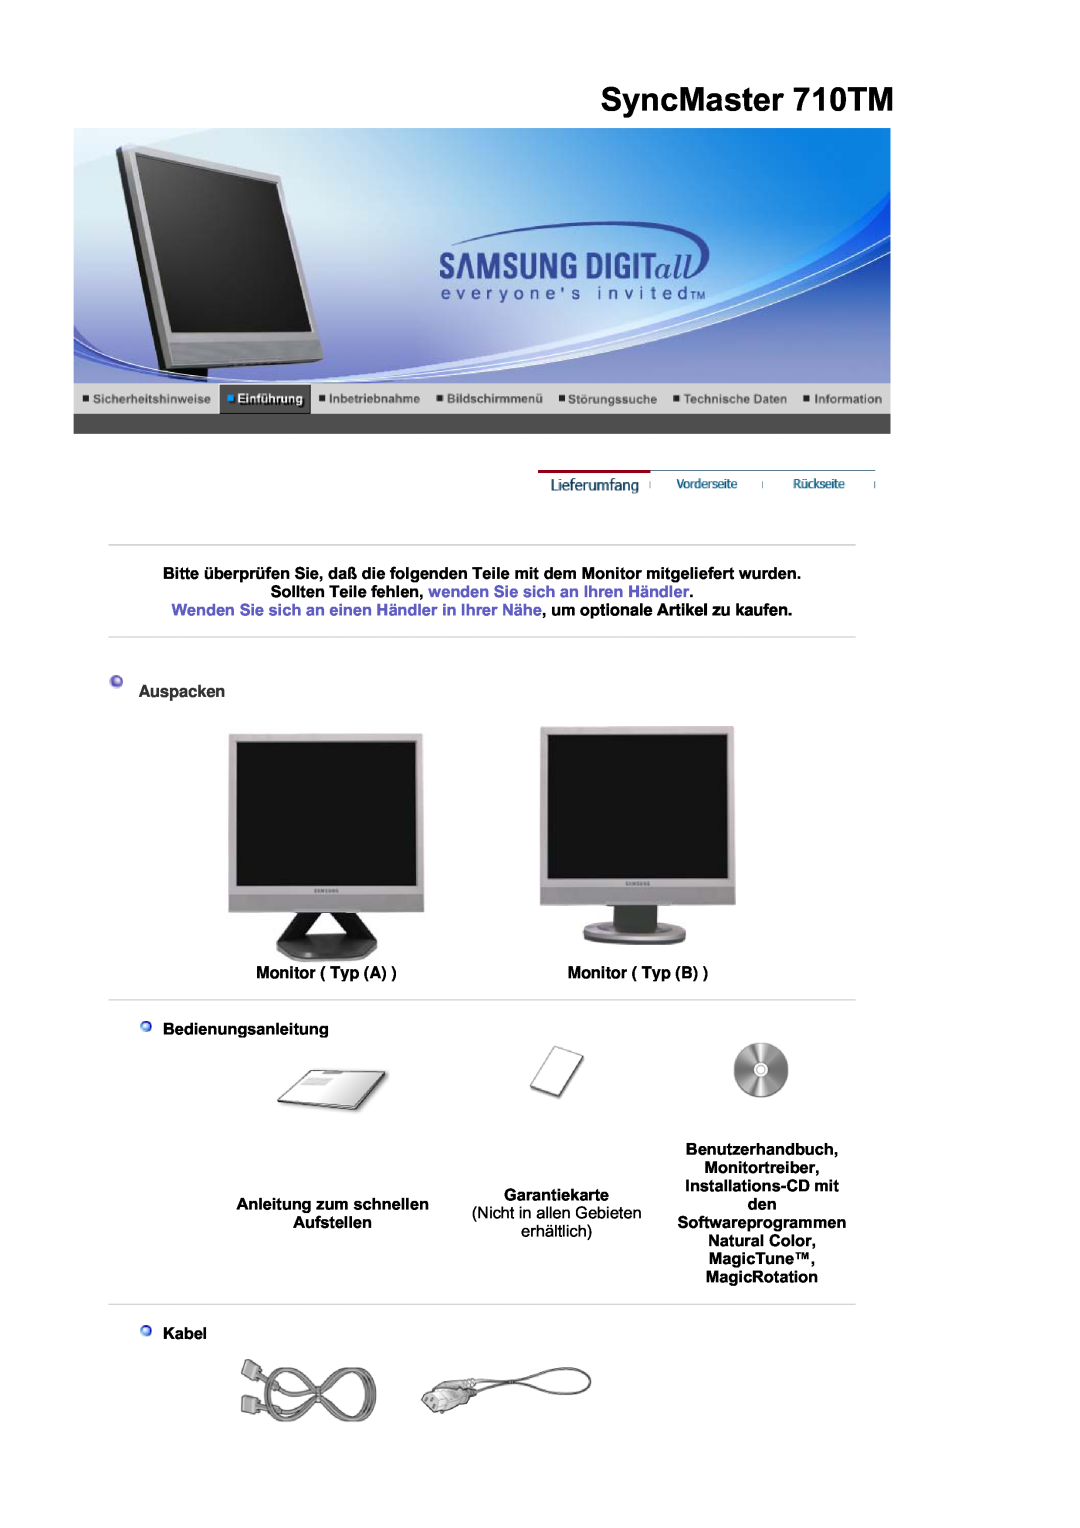 Samsung MJ19MSTSQ/EDC SyncMaster 710TM, Sollten Teile fehlen, wenden Sie sich an Ihren Händler, Auspacken, Monitor Typ A 